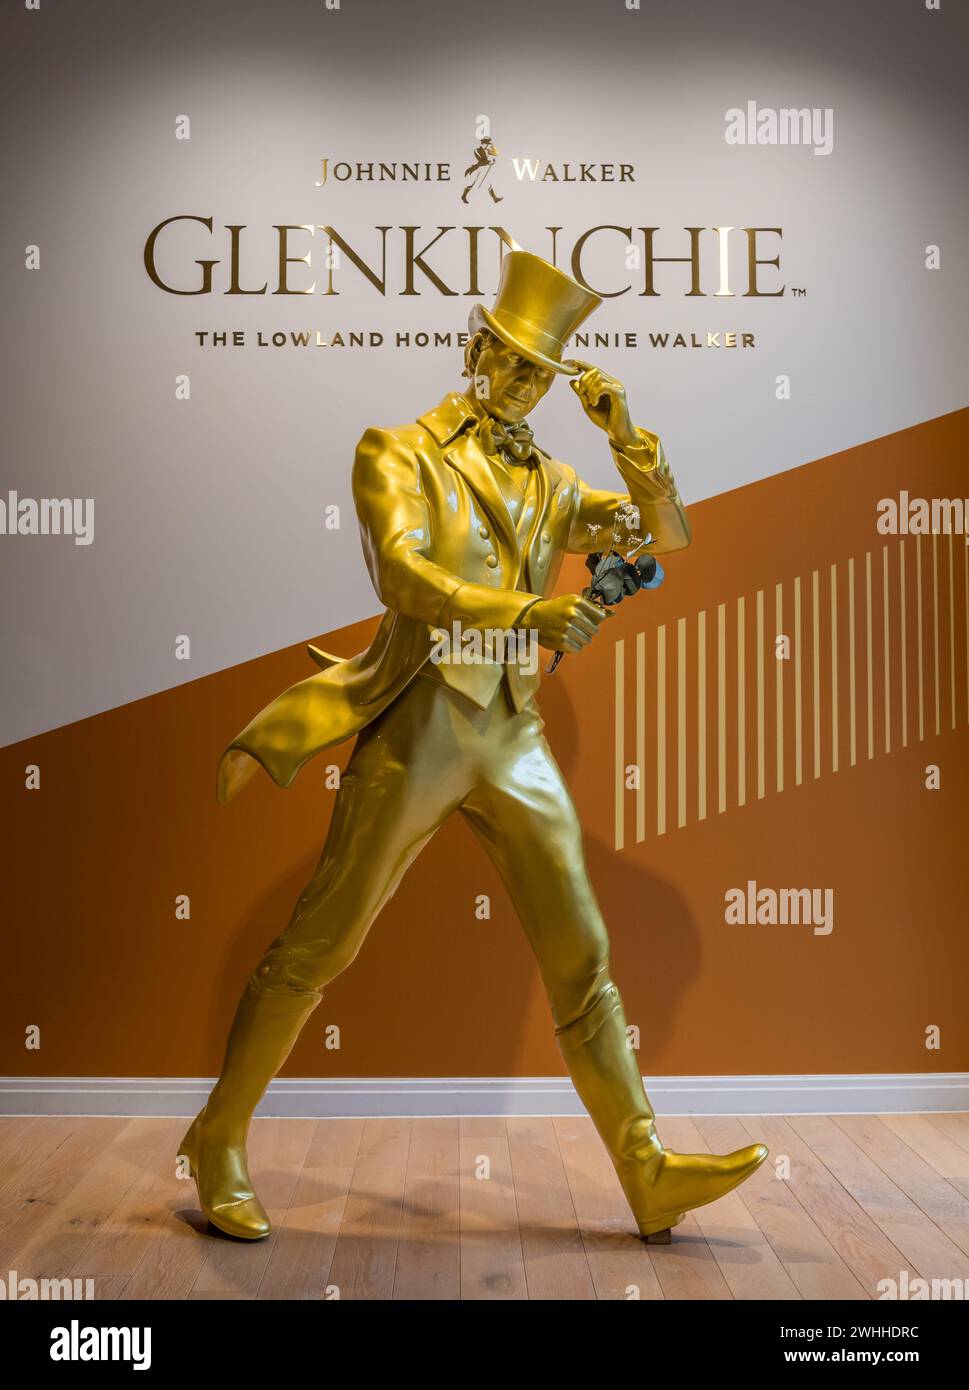 Johnnie Walker Striding Man model à Glenkinchie Distillery, East Lothian, Écosse, Royaume-Uni Banque D'Images